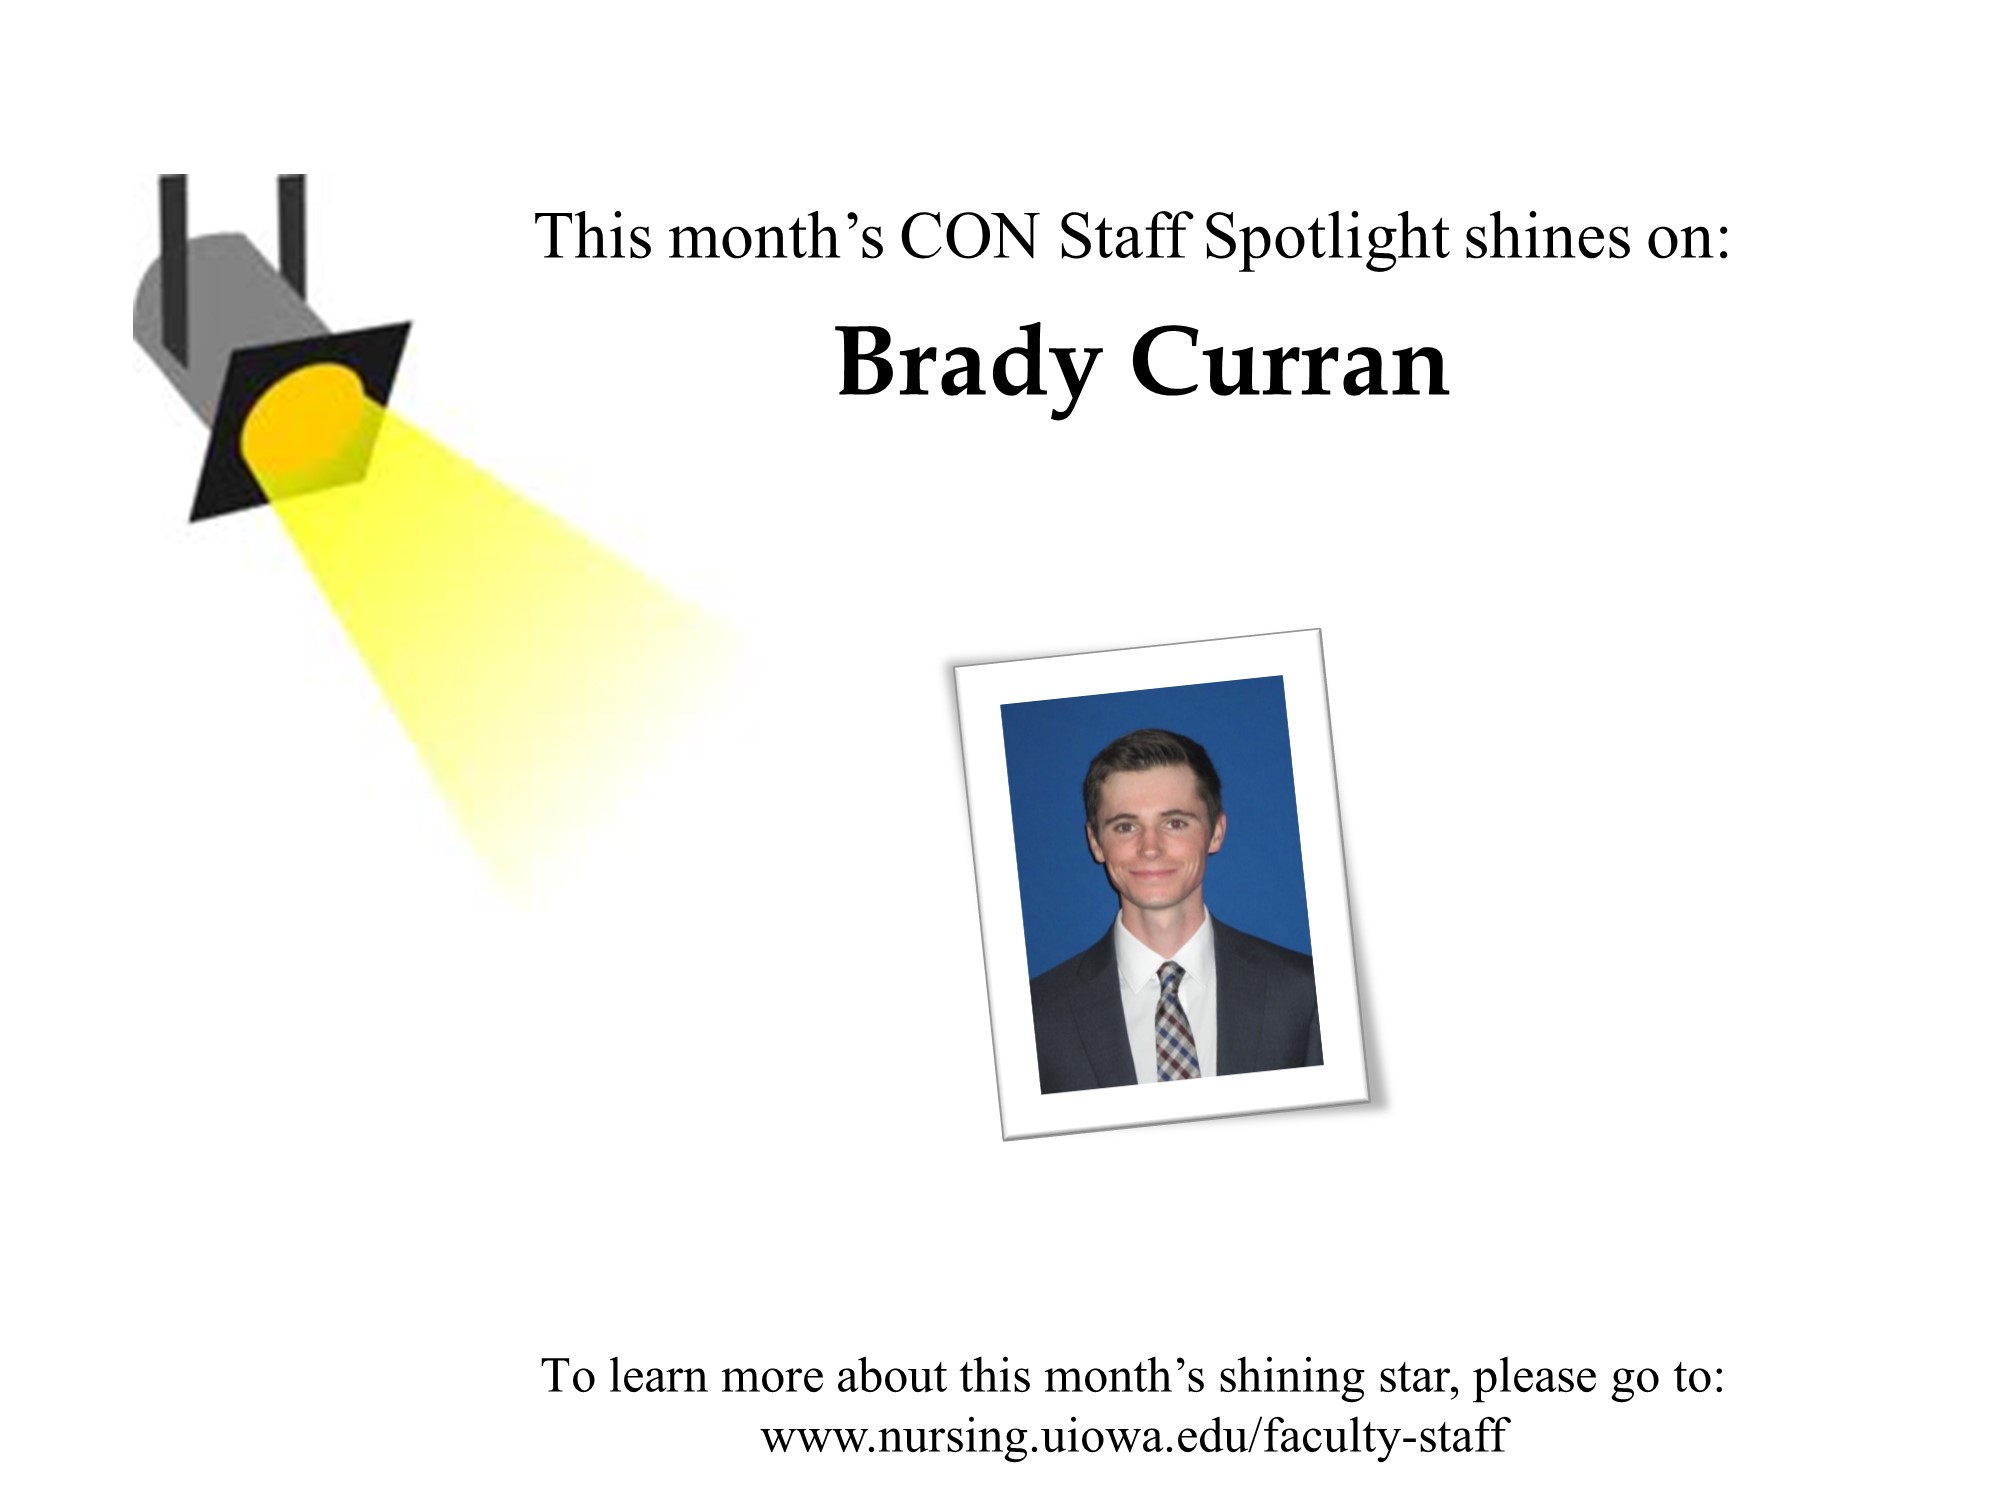 Brady Curran